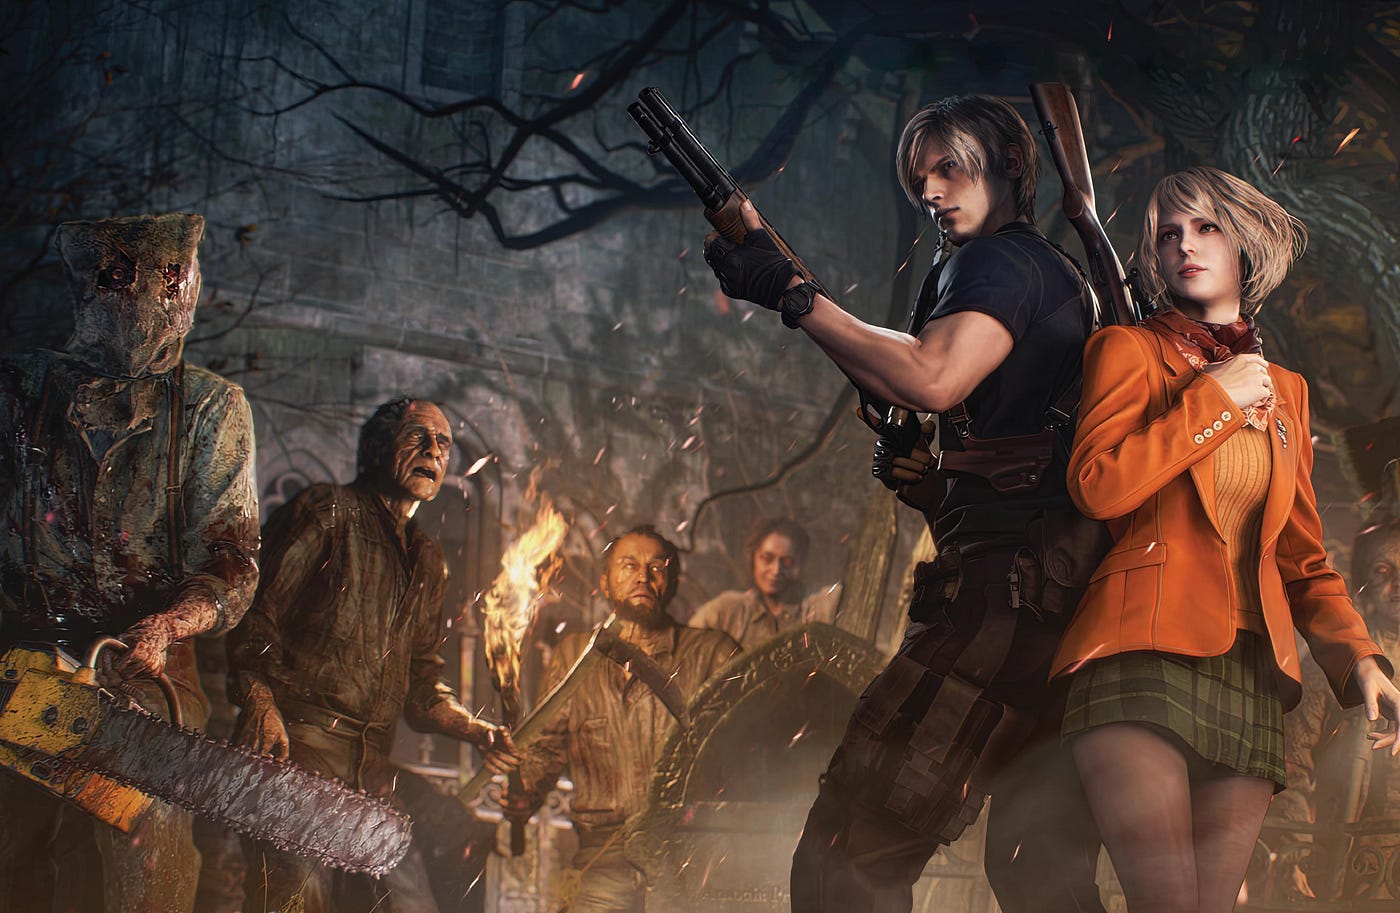 Jack Krauser - Resident Evil 4 Guide - IGN